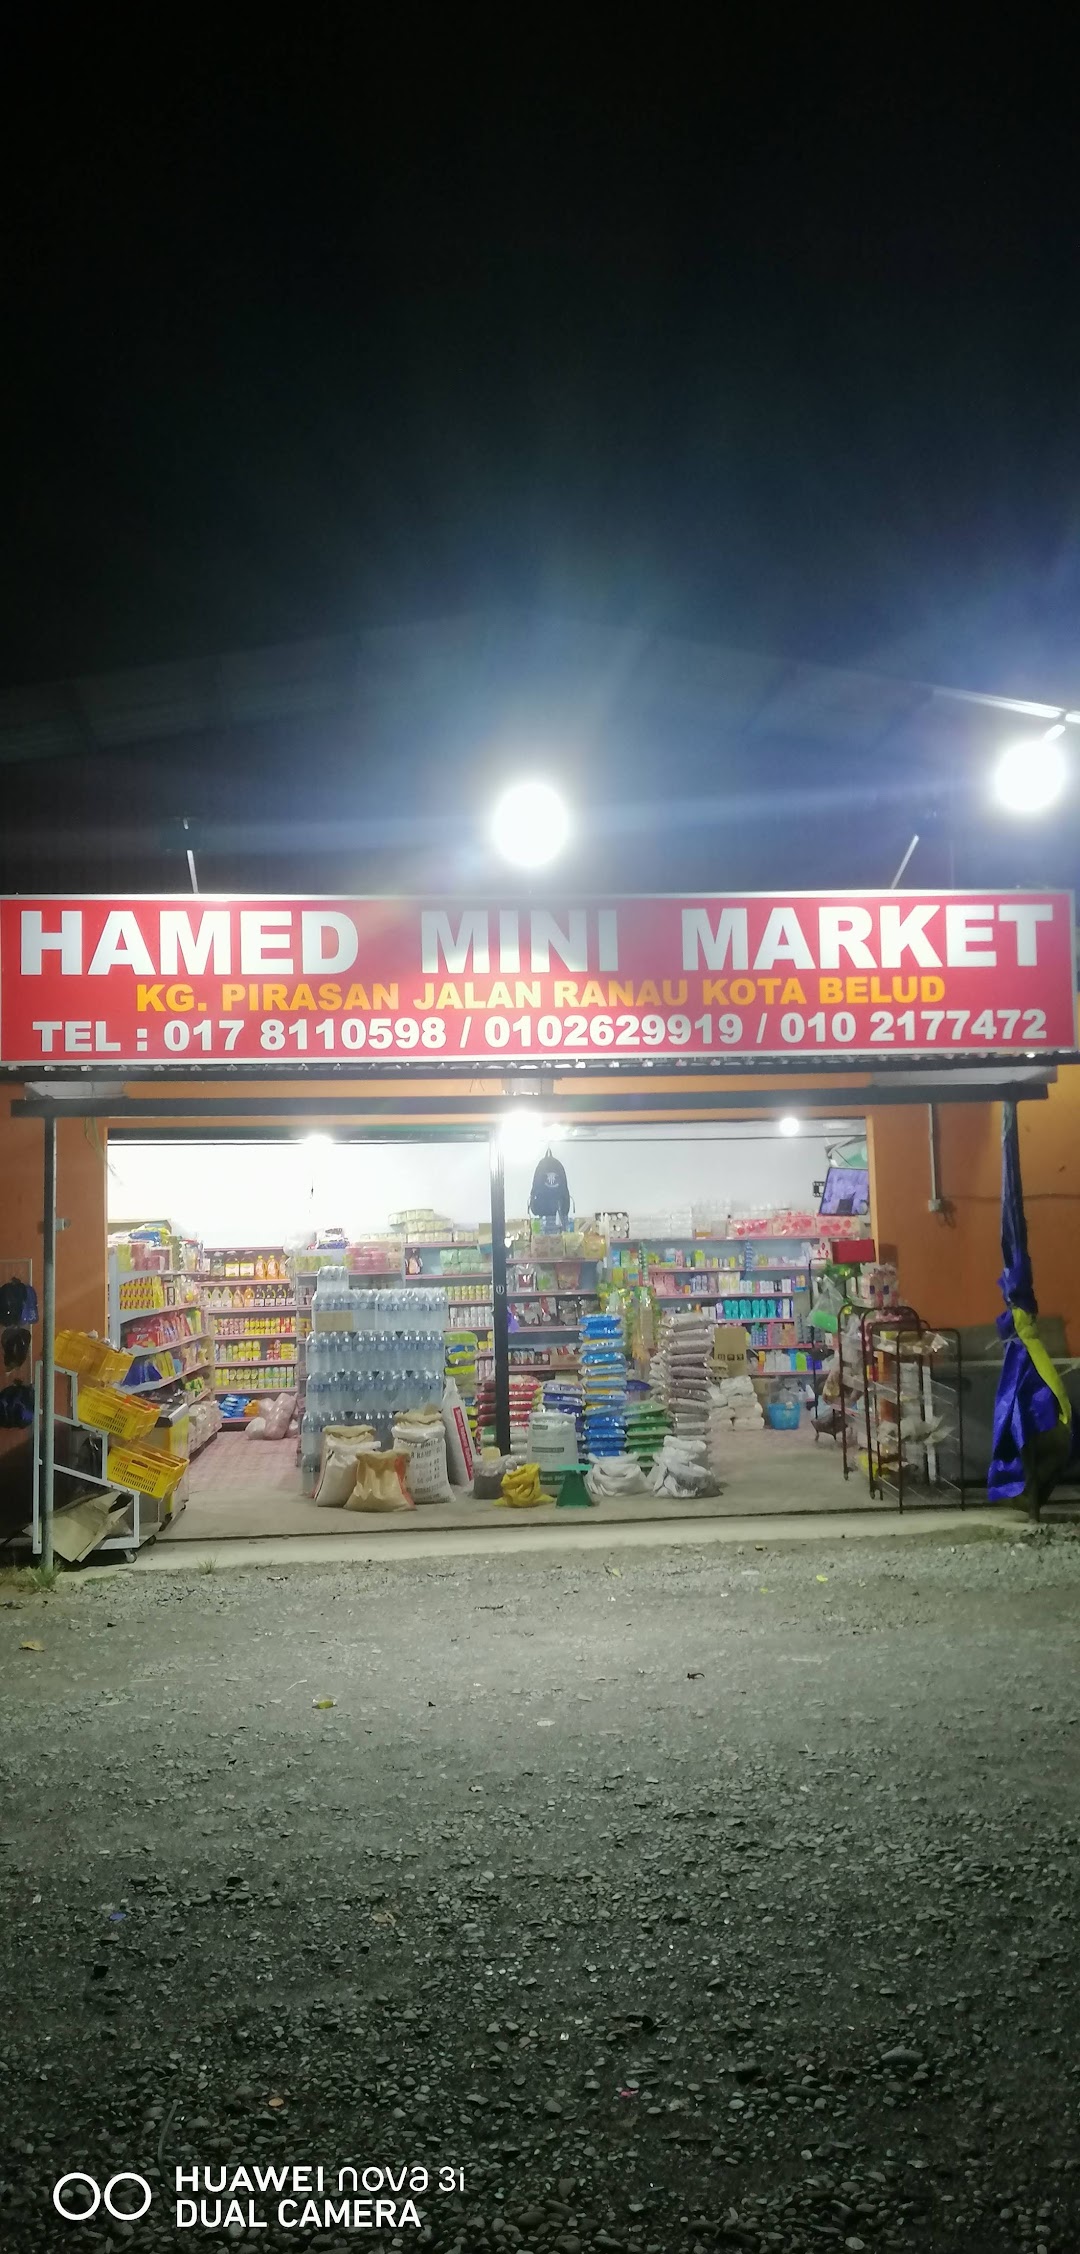 Hamed Mini Market Pirasan